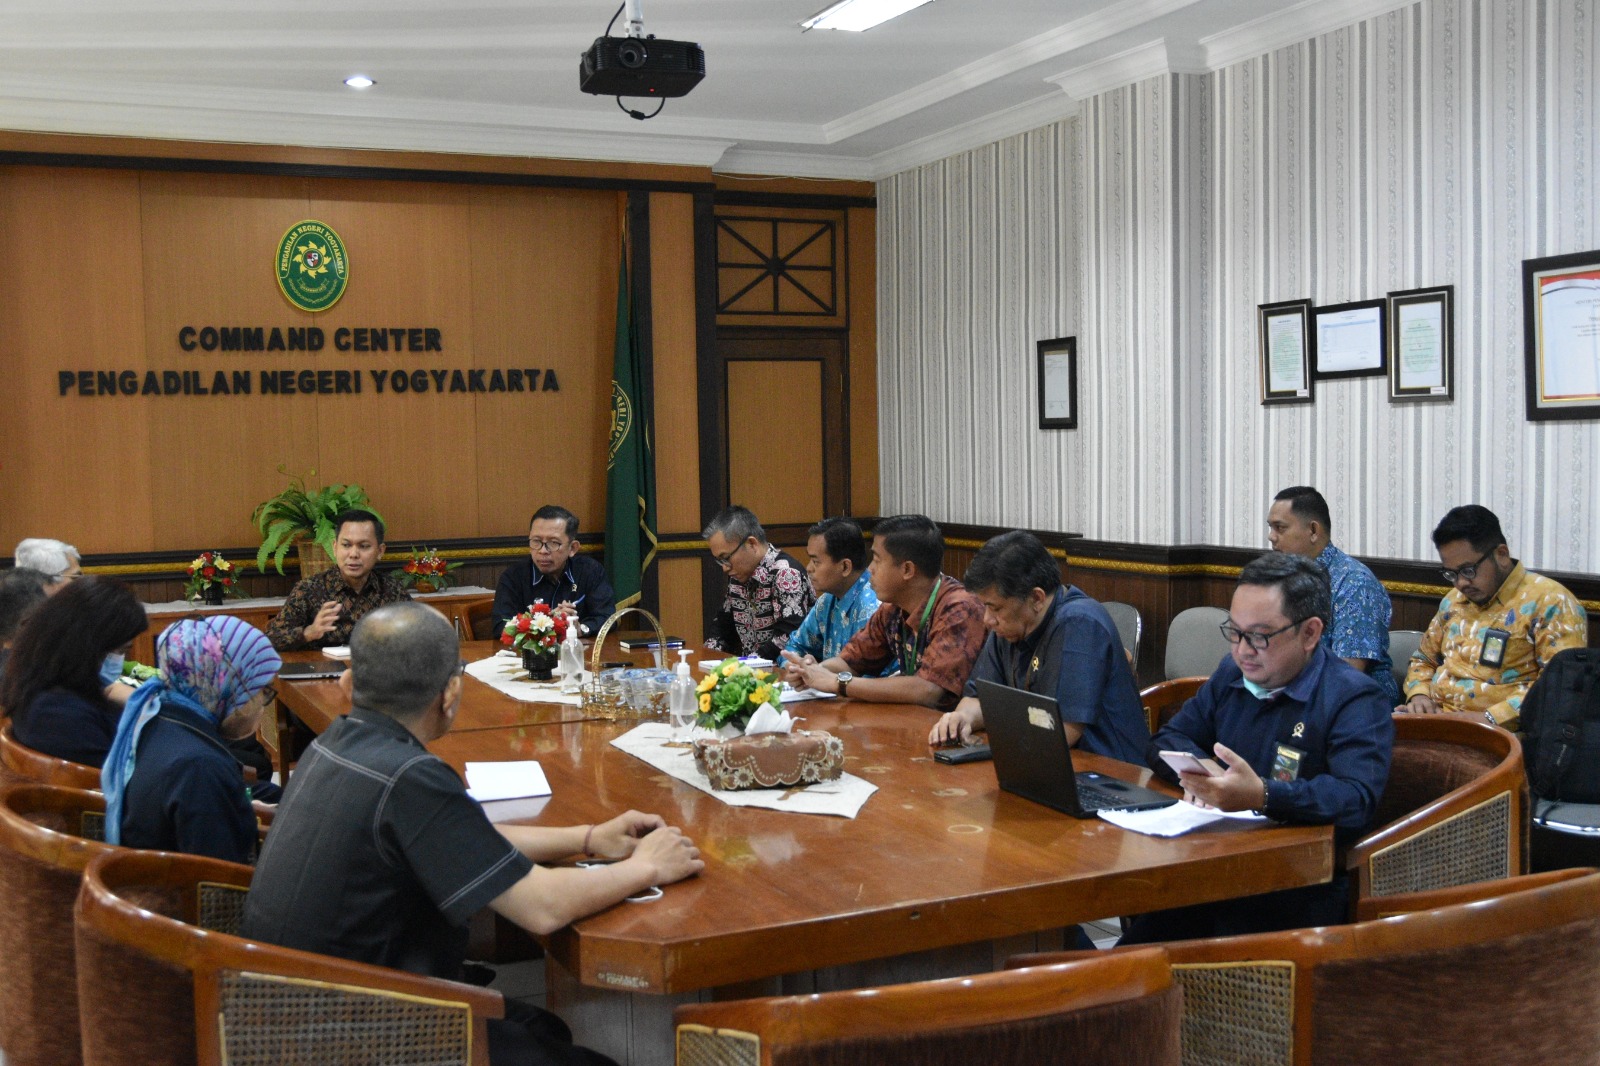 Pengadilan Negeri Yogyakarta Melaksanakan FGD dan Wawancara bersama Puslitbang Kumdil Mahkamah Agung RI